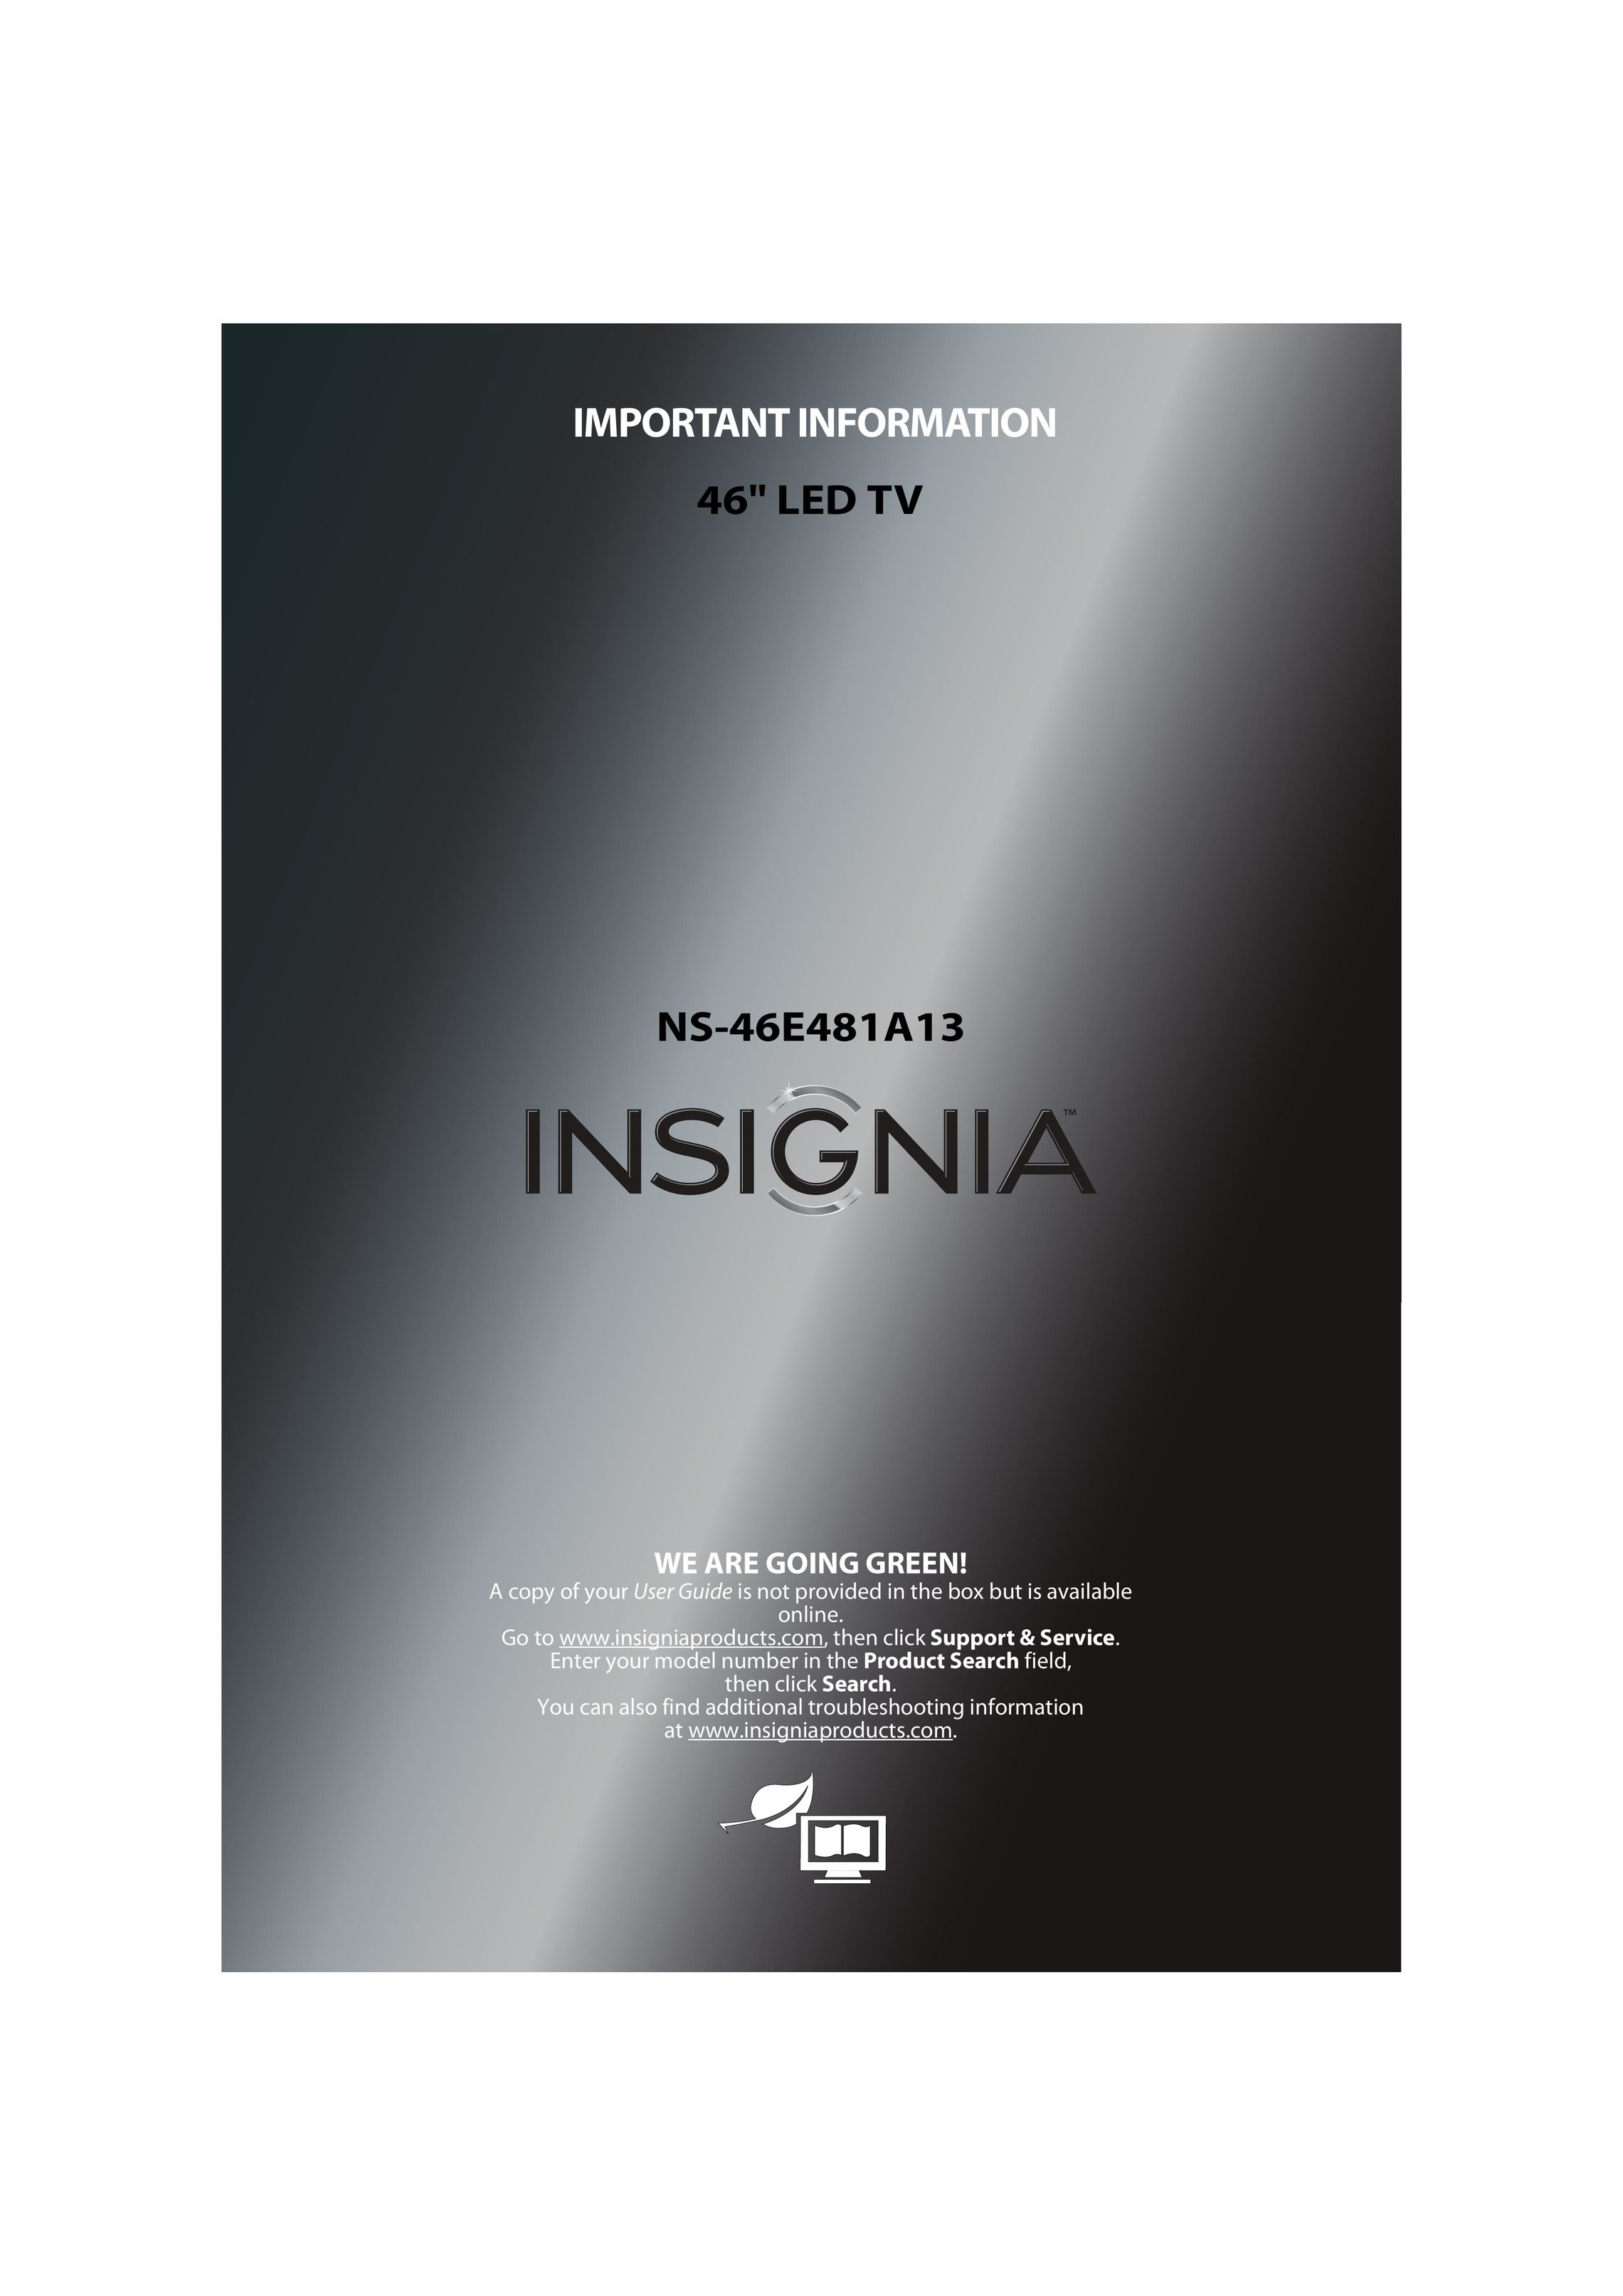 Insignia NS-46E481A13 Car Satellite TV System User Manual